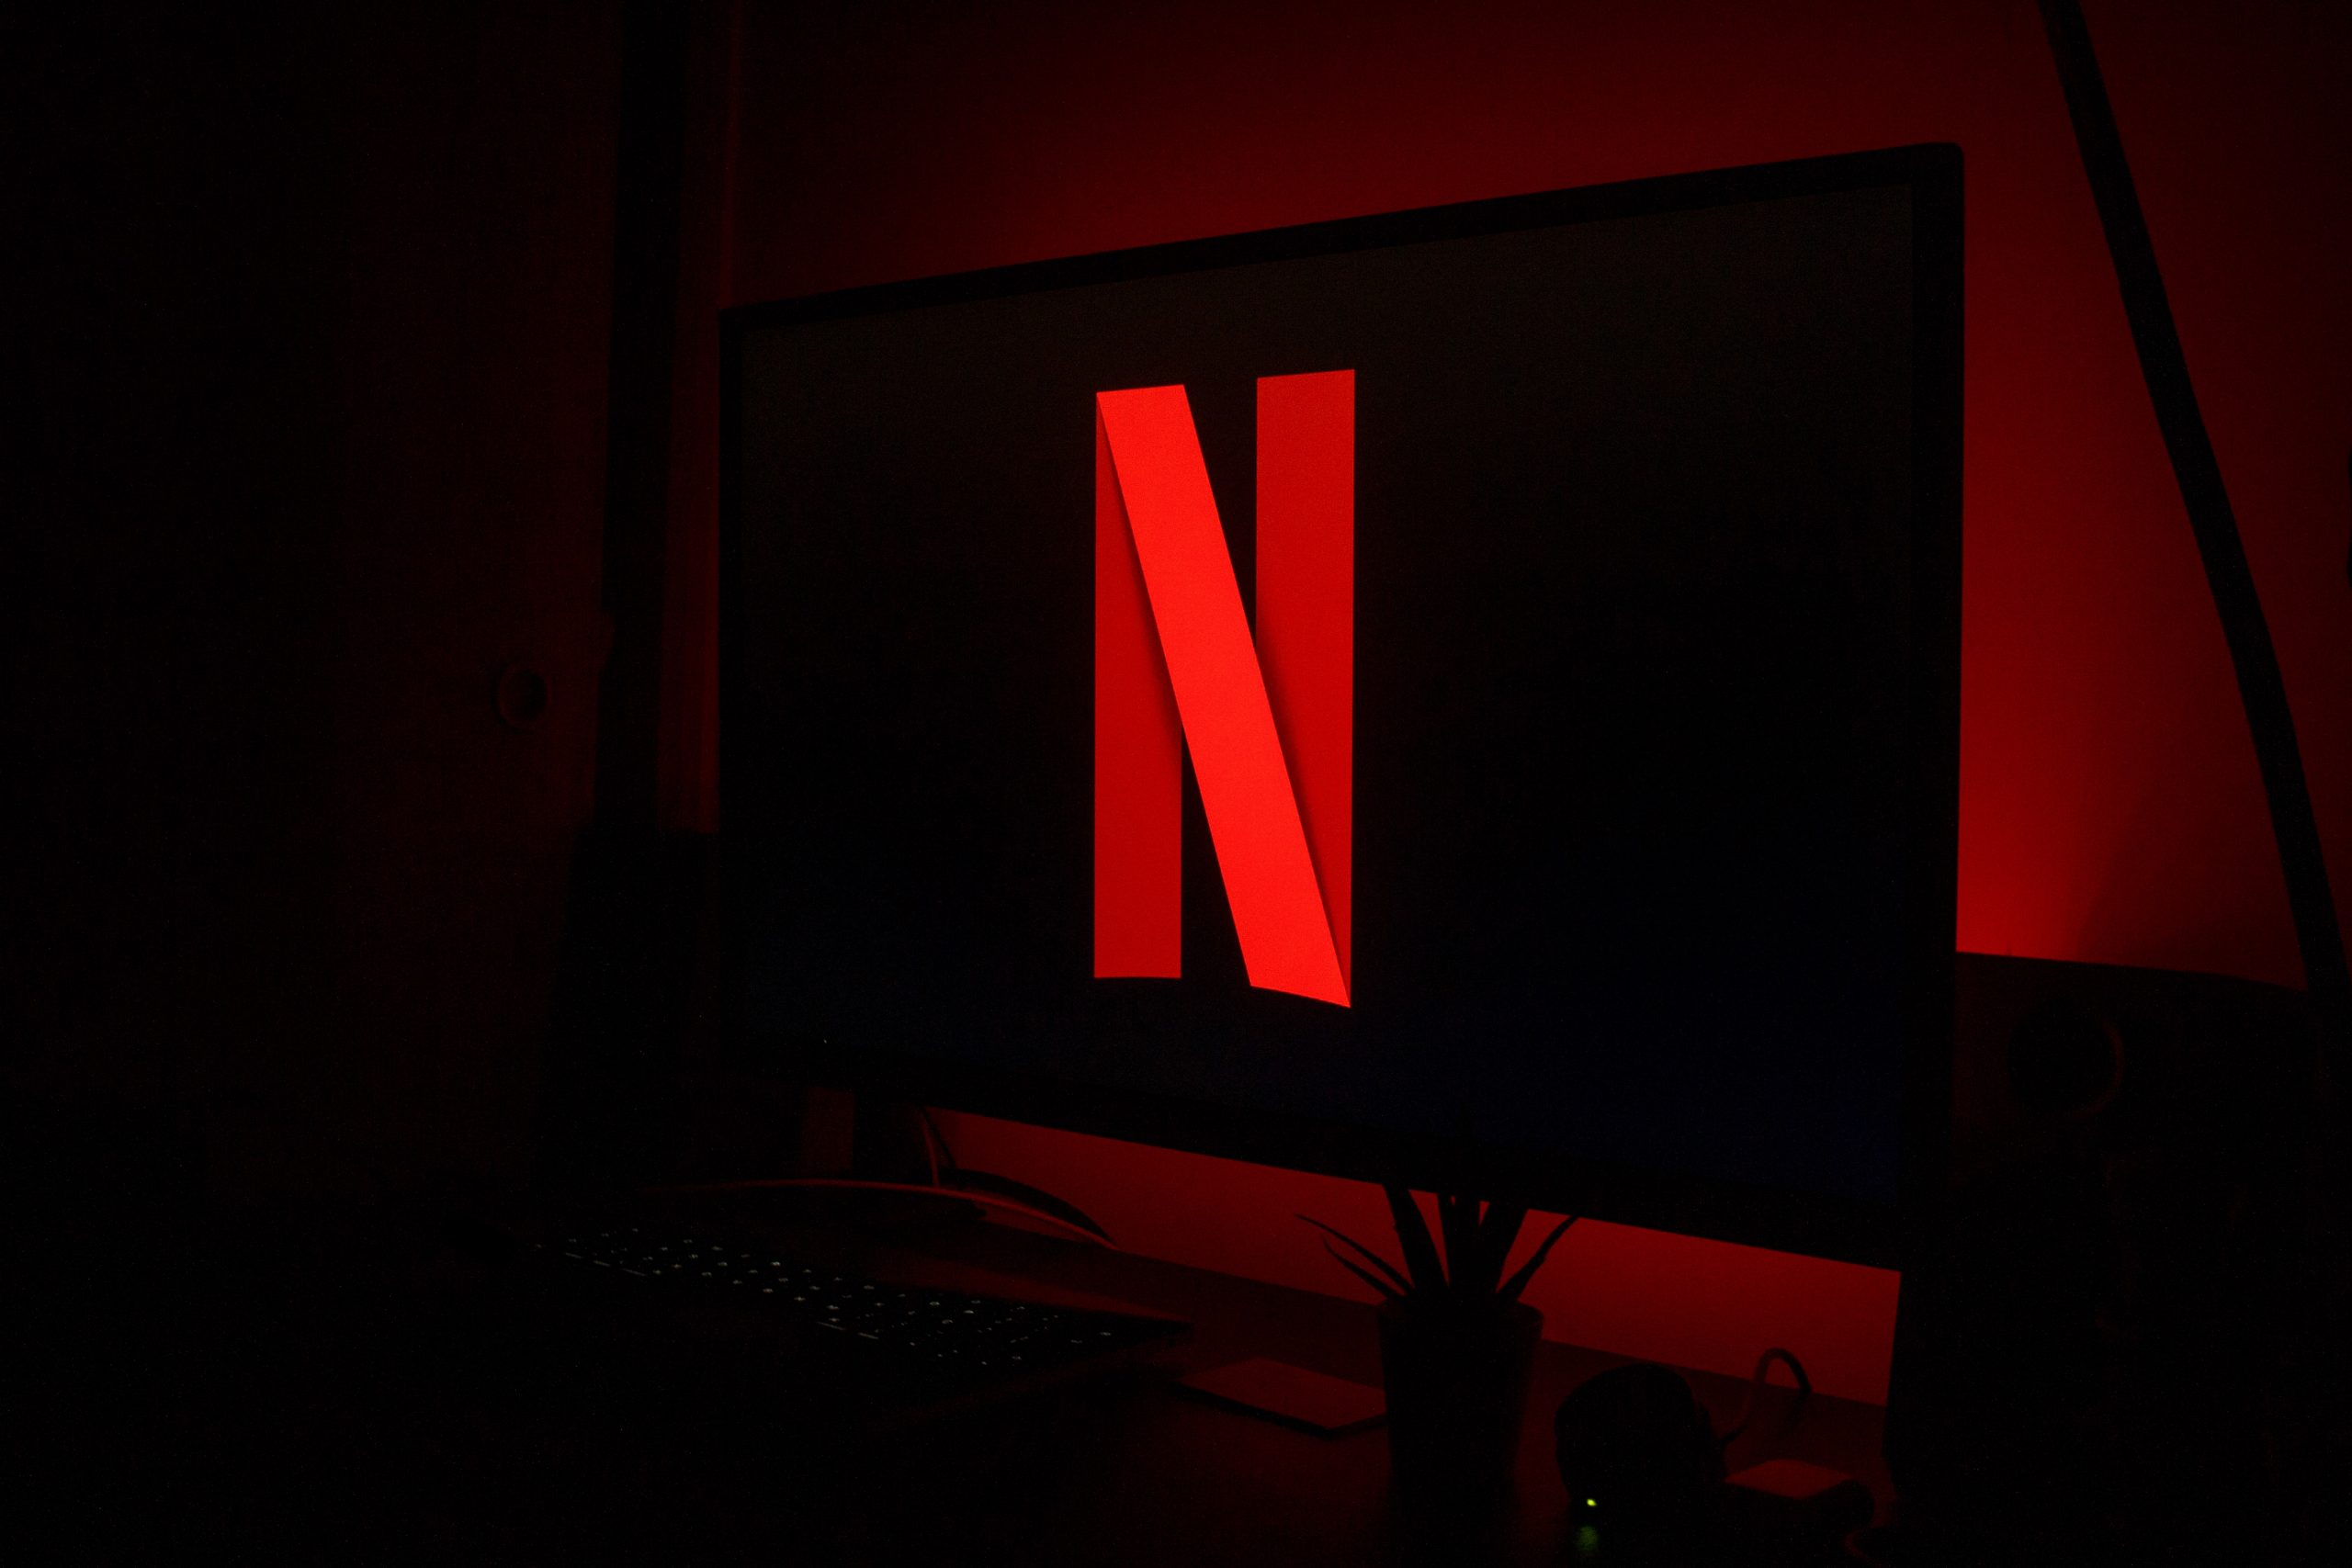 Netflix Logo on TV